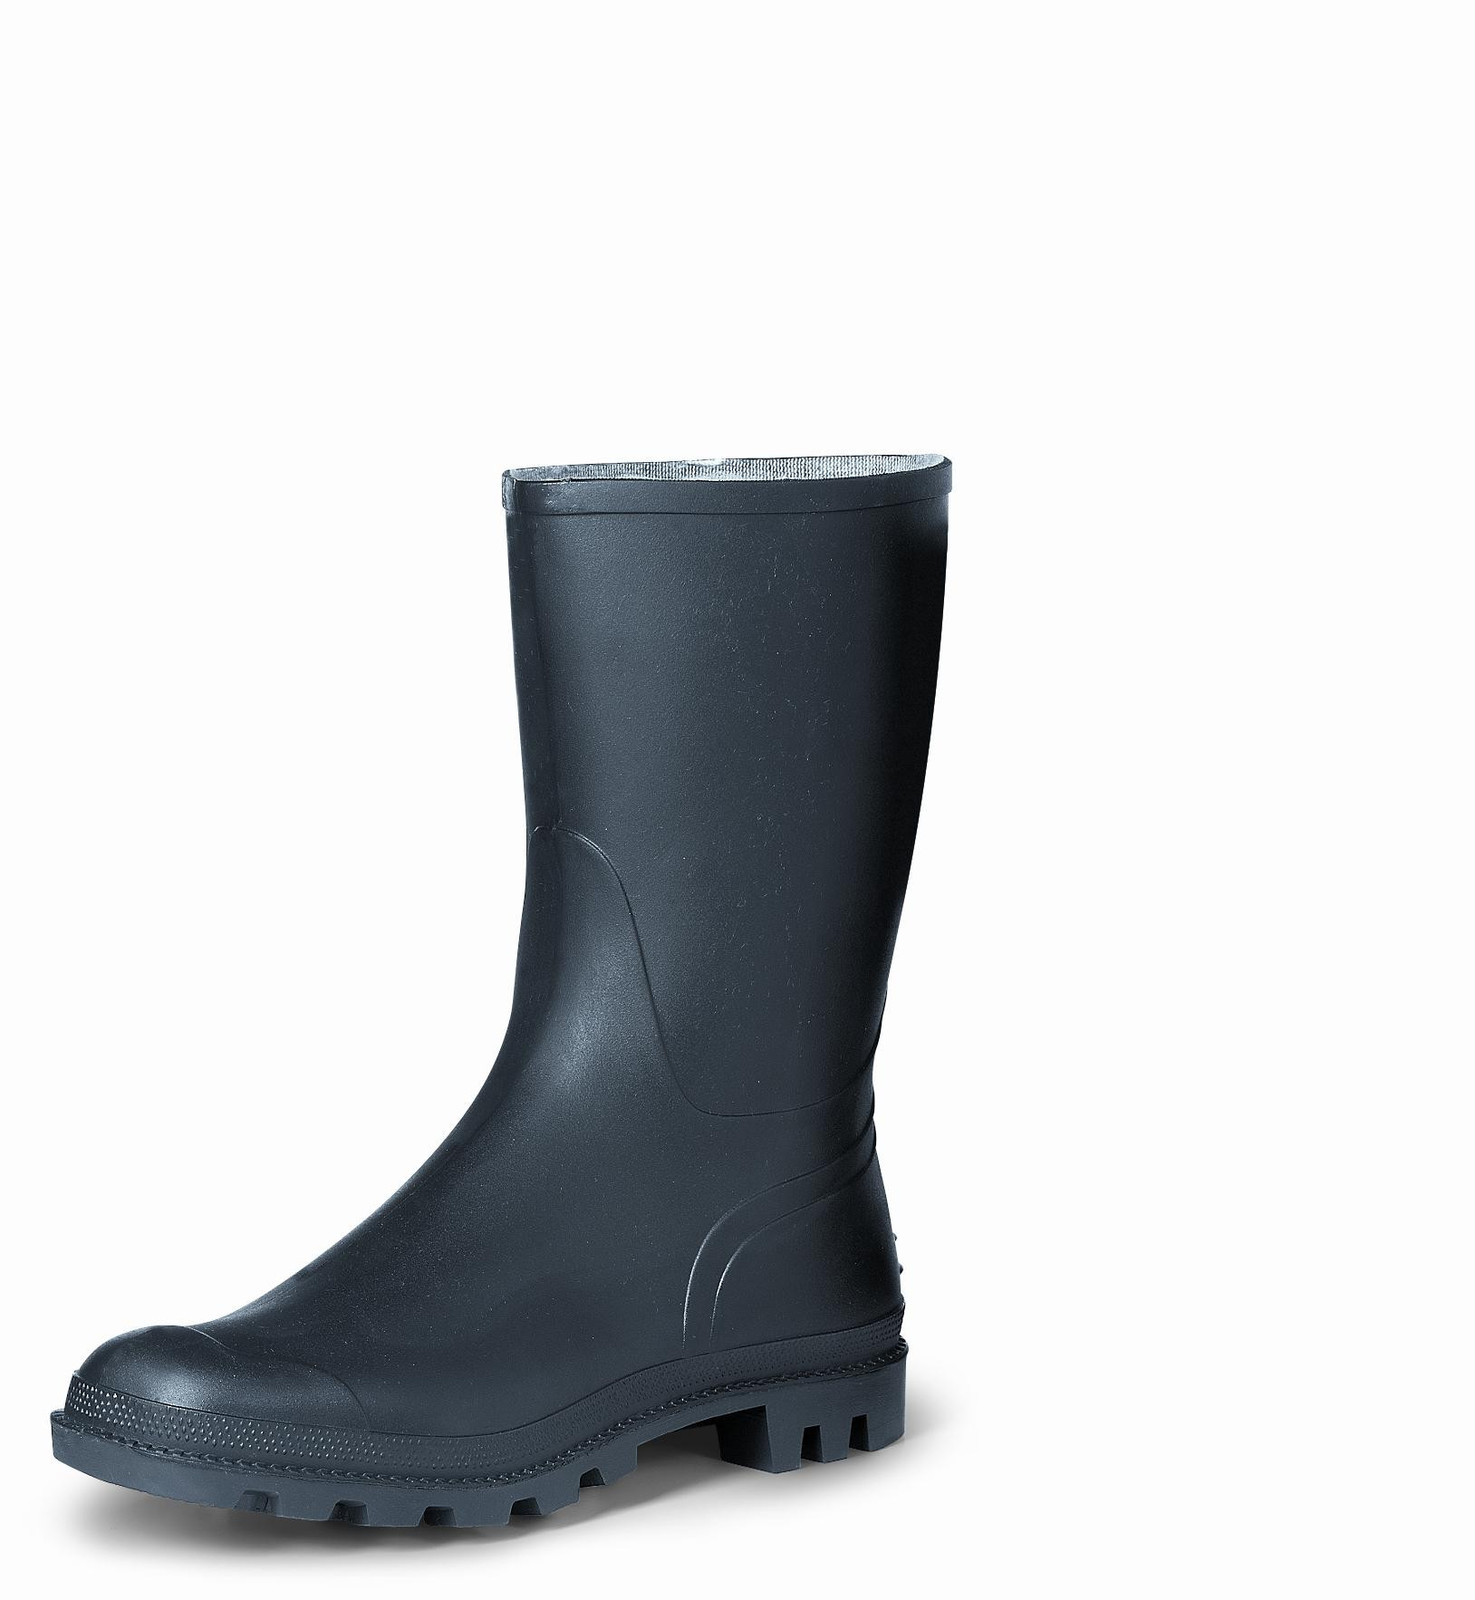 Gumáky Boots Troncheto PVC nízke - veľkosť: 39, farba: čierna